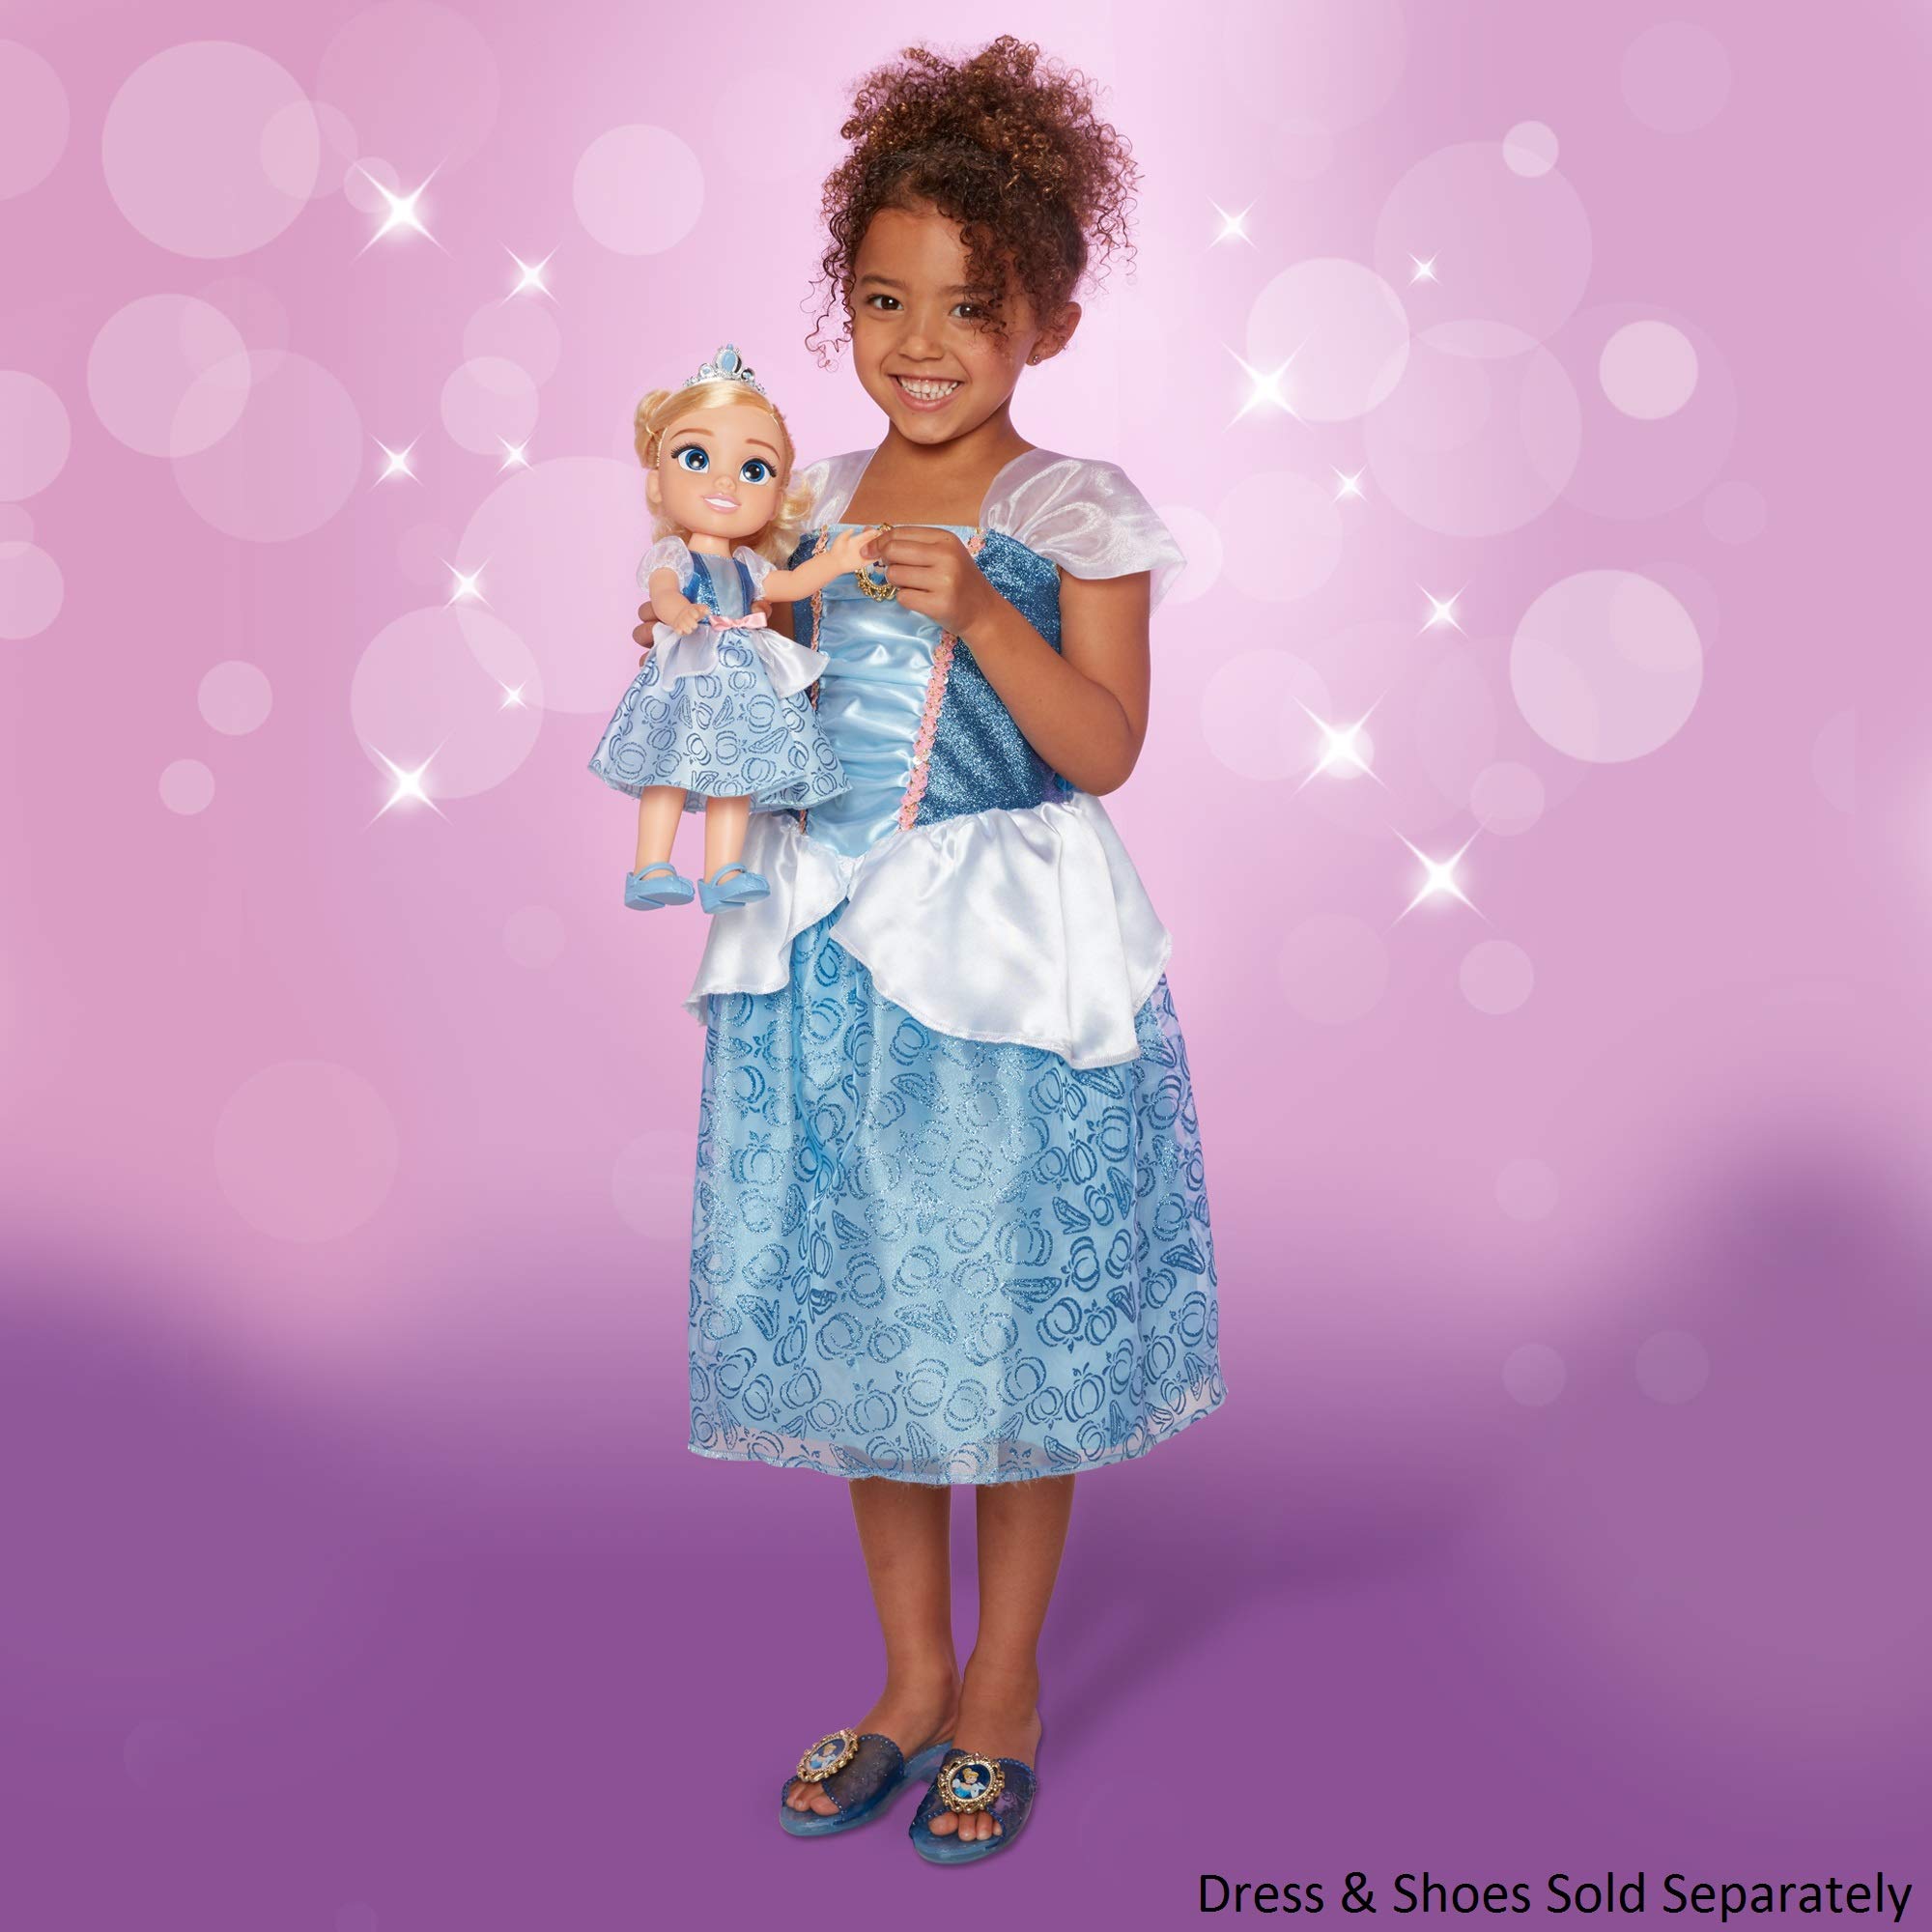 Disney Princess My Friend Cinderella Doll 14